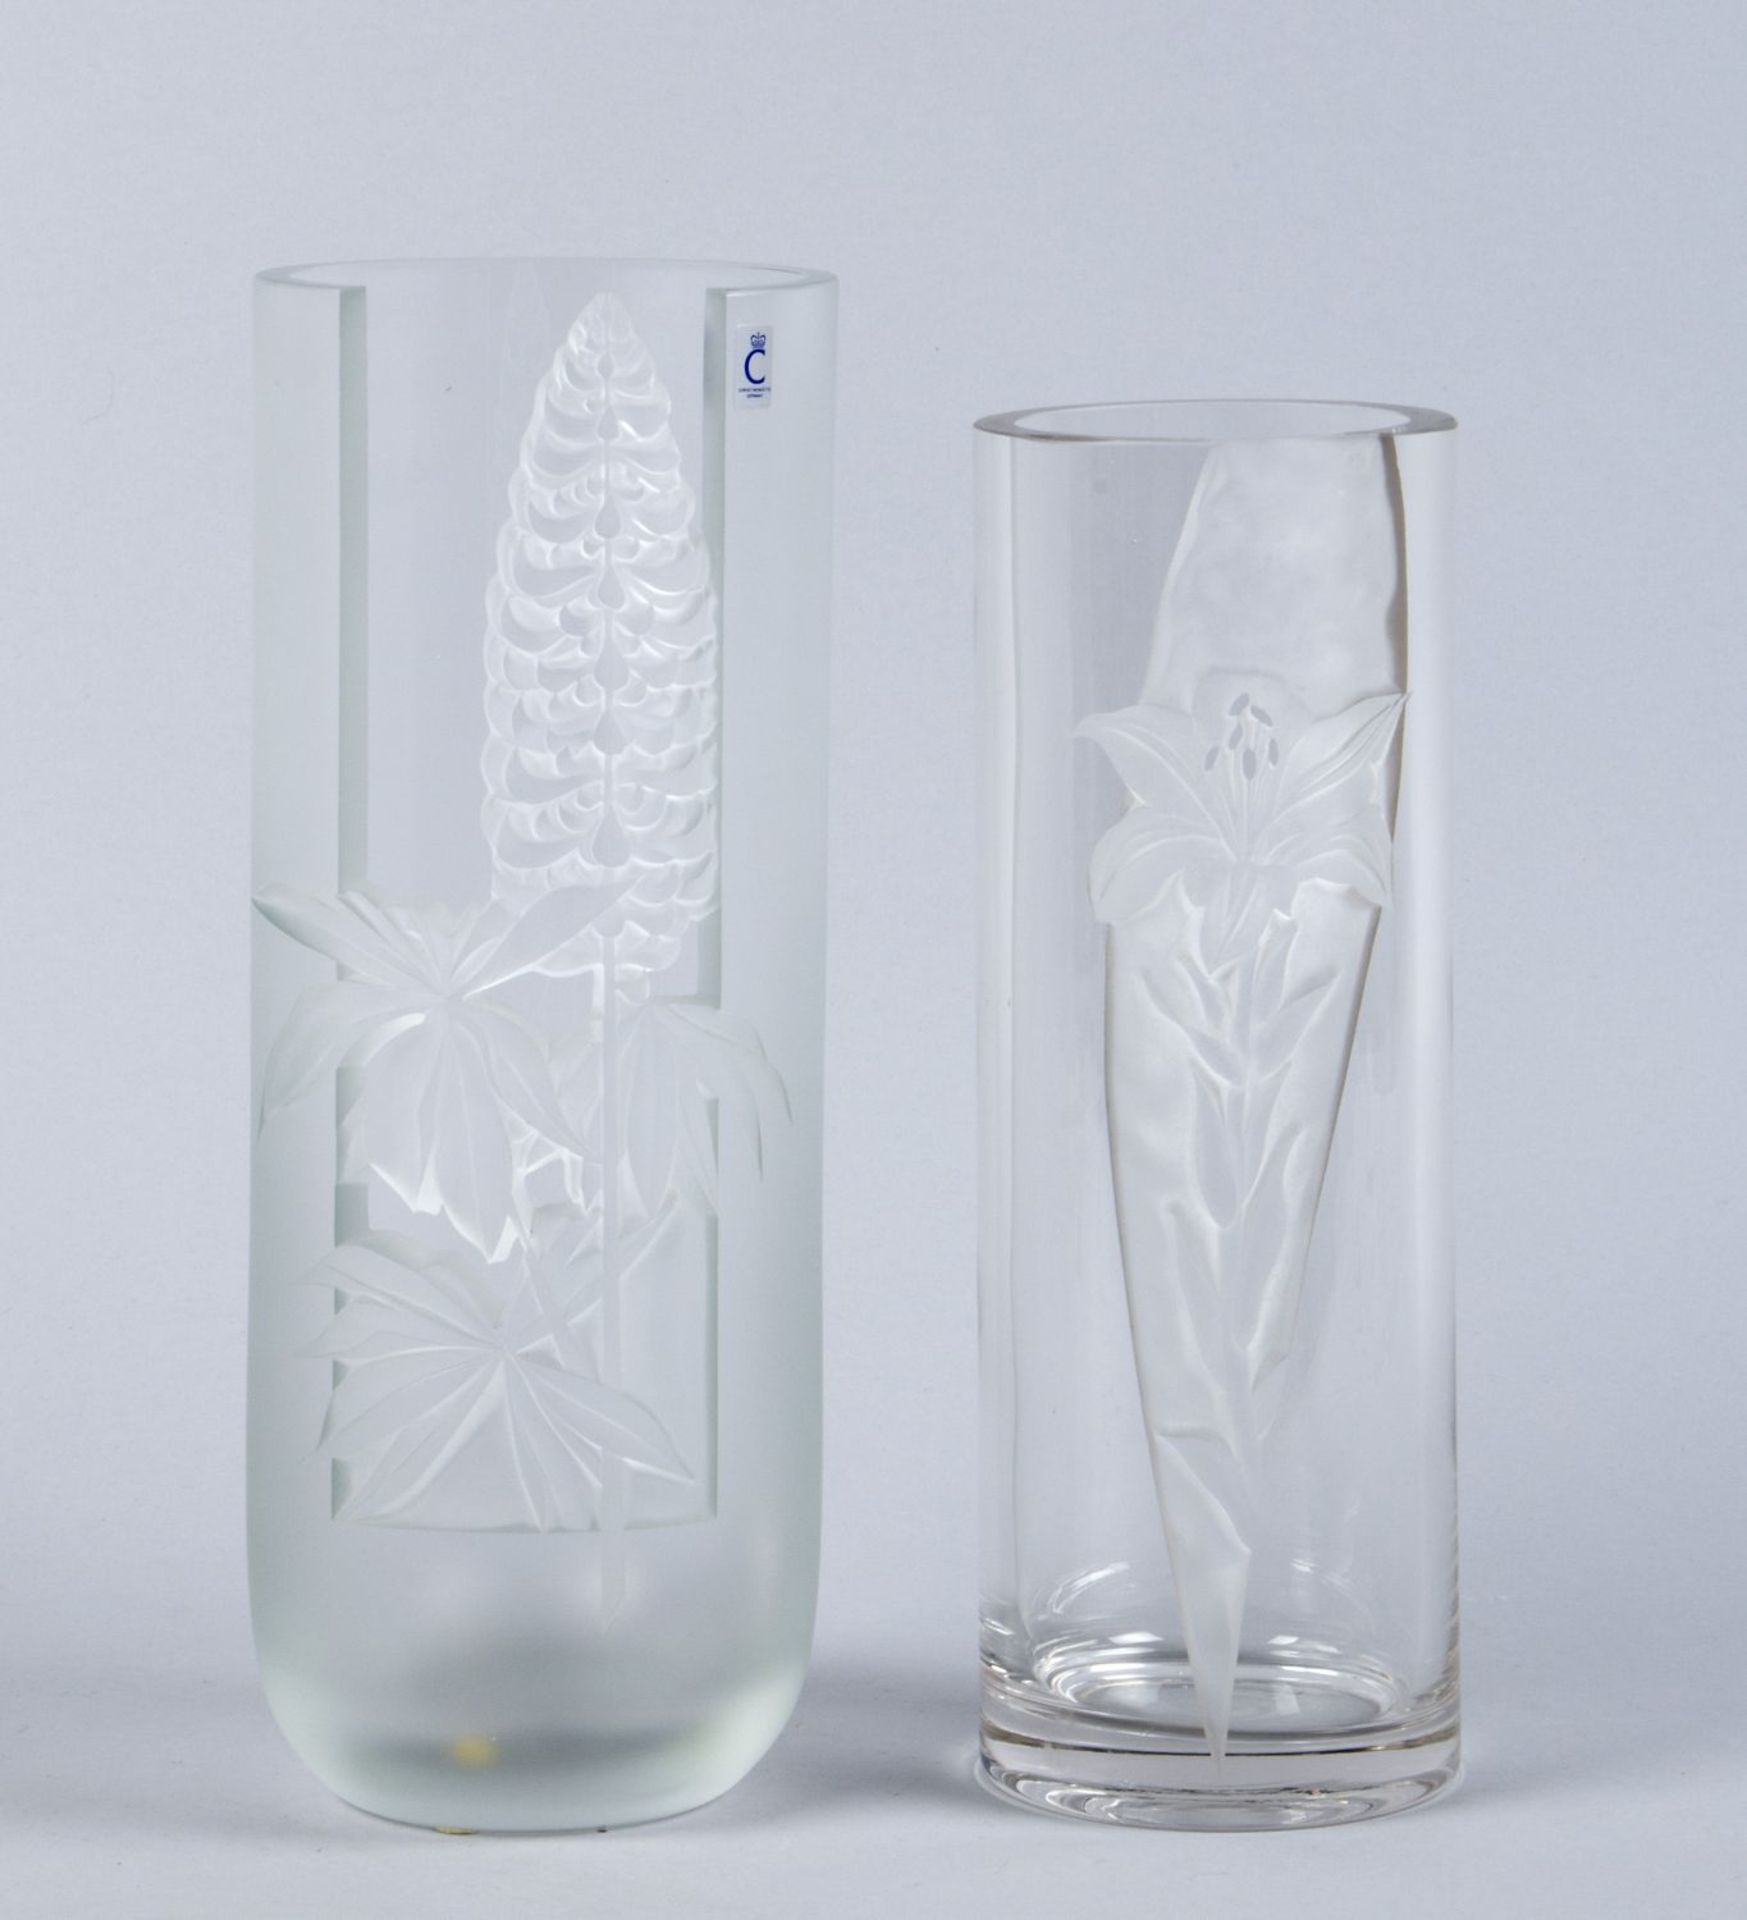 Zwei VasenFarbloses Glas, tlw. satiniert. Geschnittener floraler Dekor. U.a. num. 5568/34/Sst.579